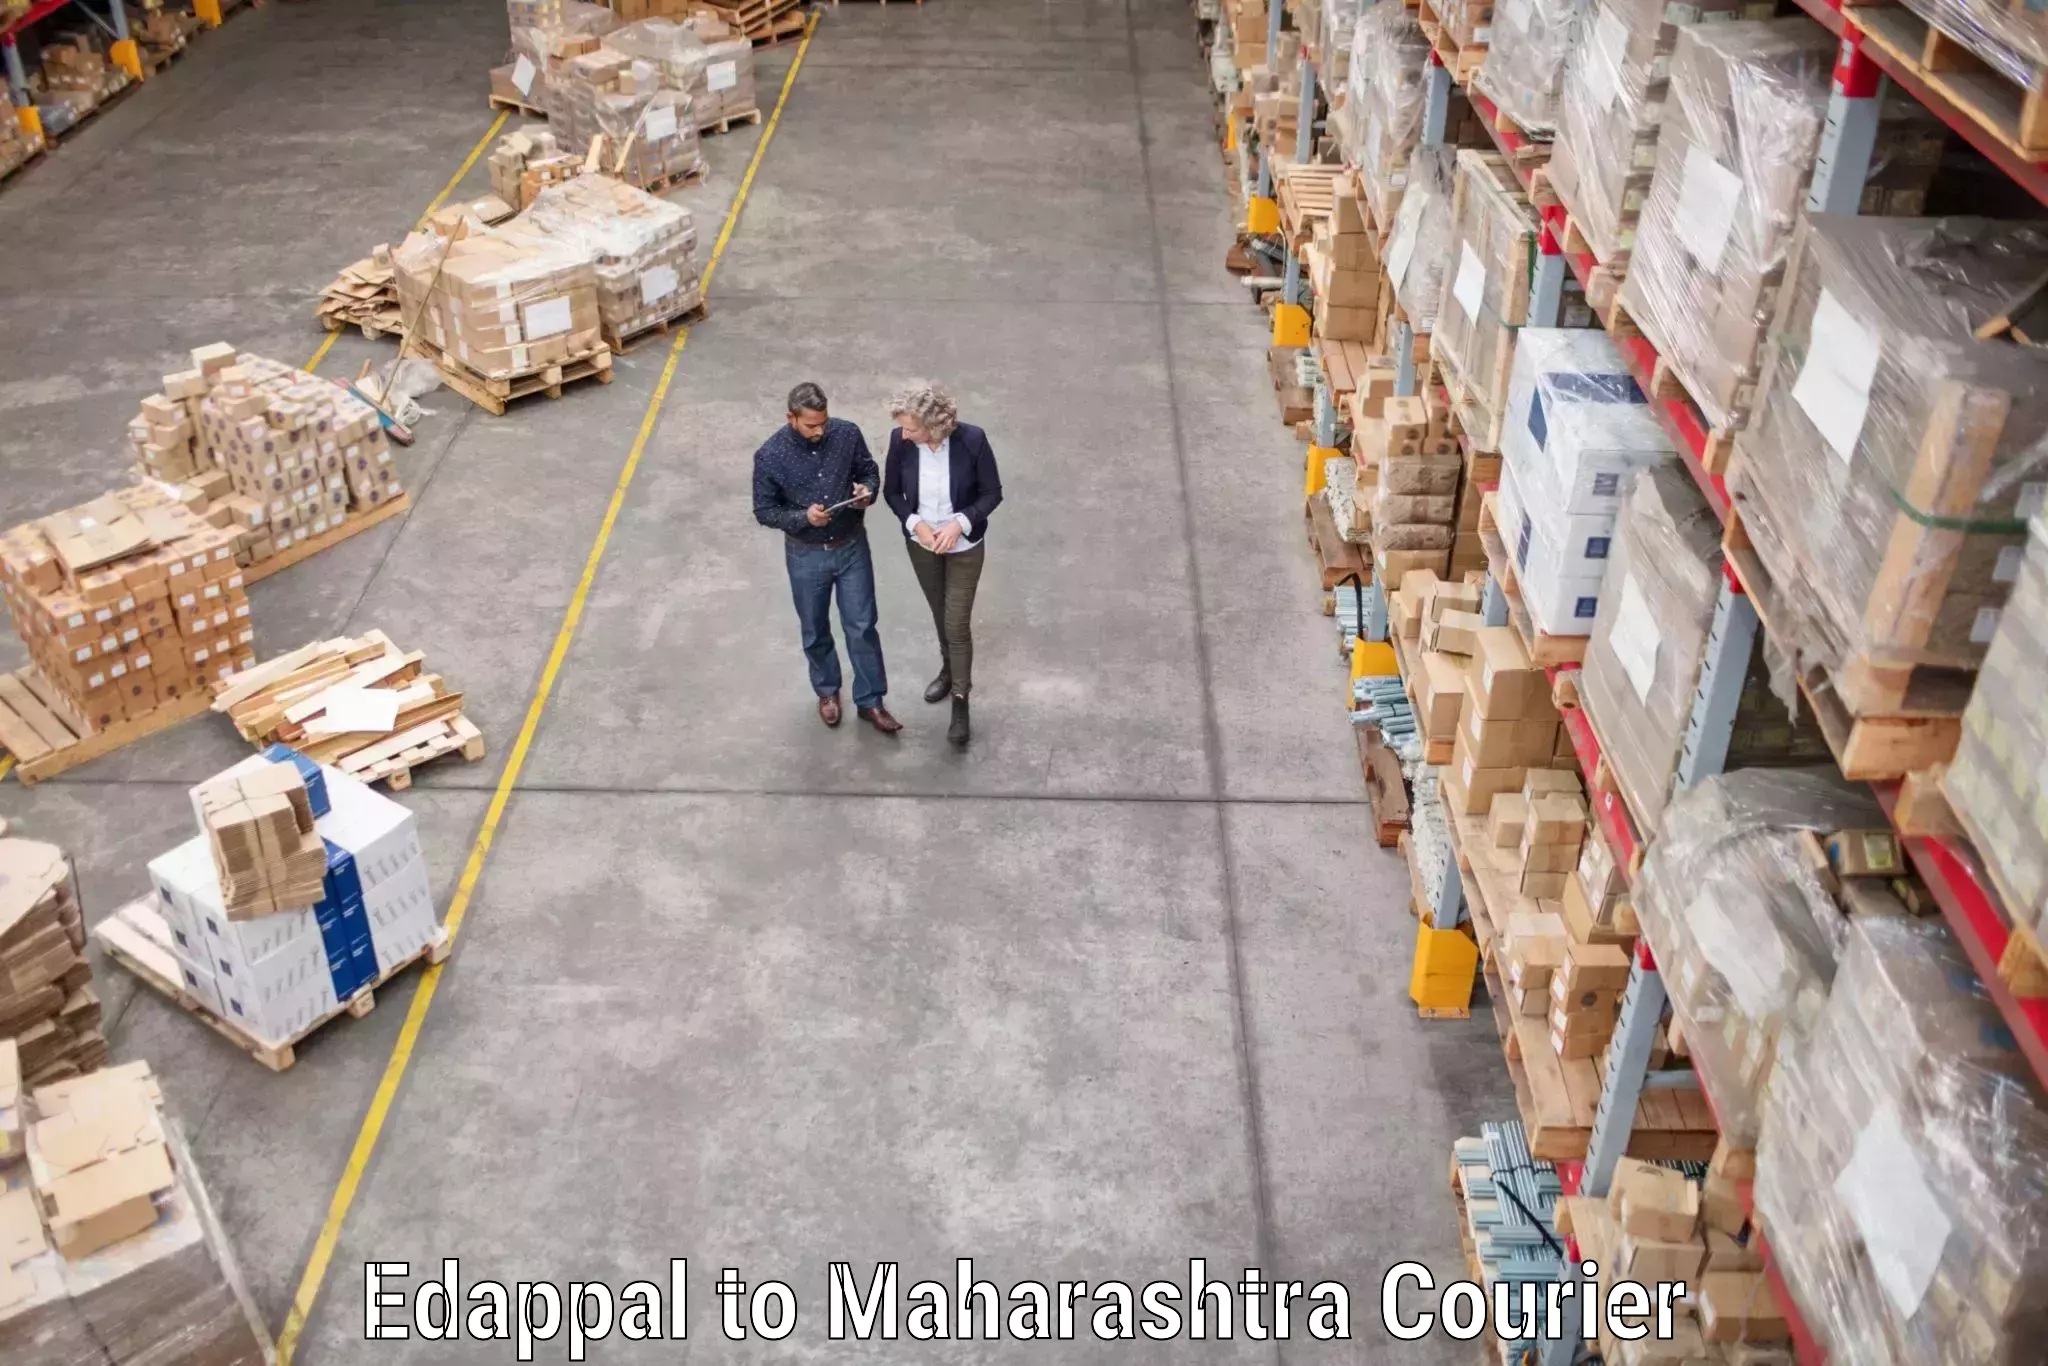 Full-service movers Edappal to Maharashtra